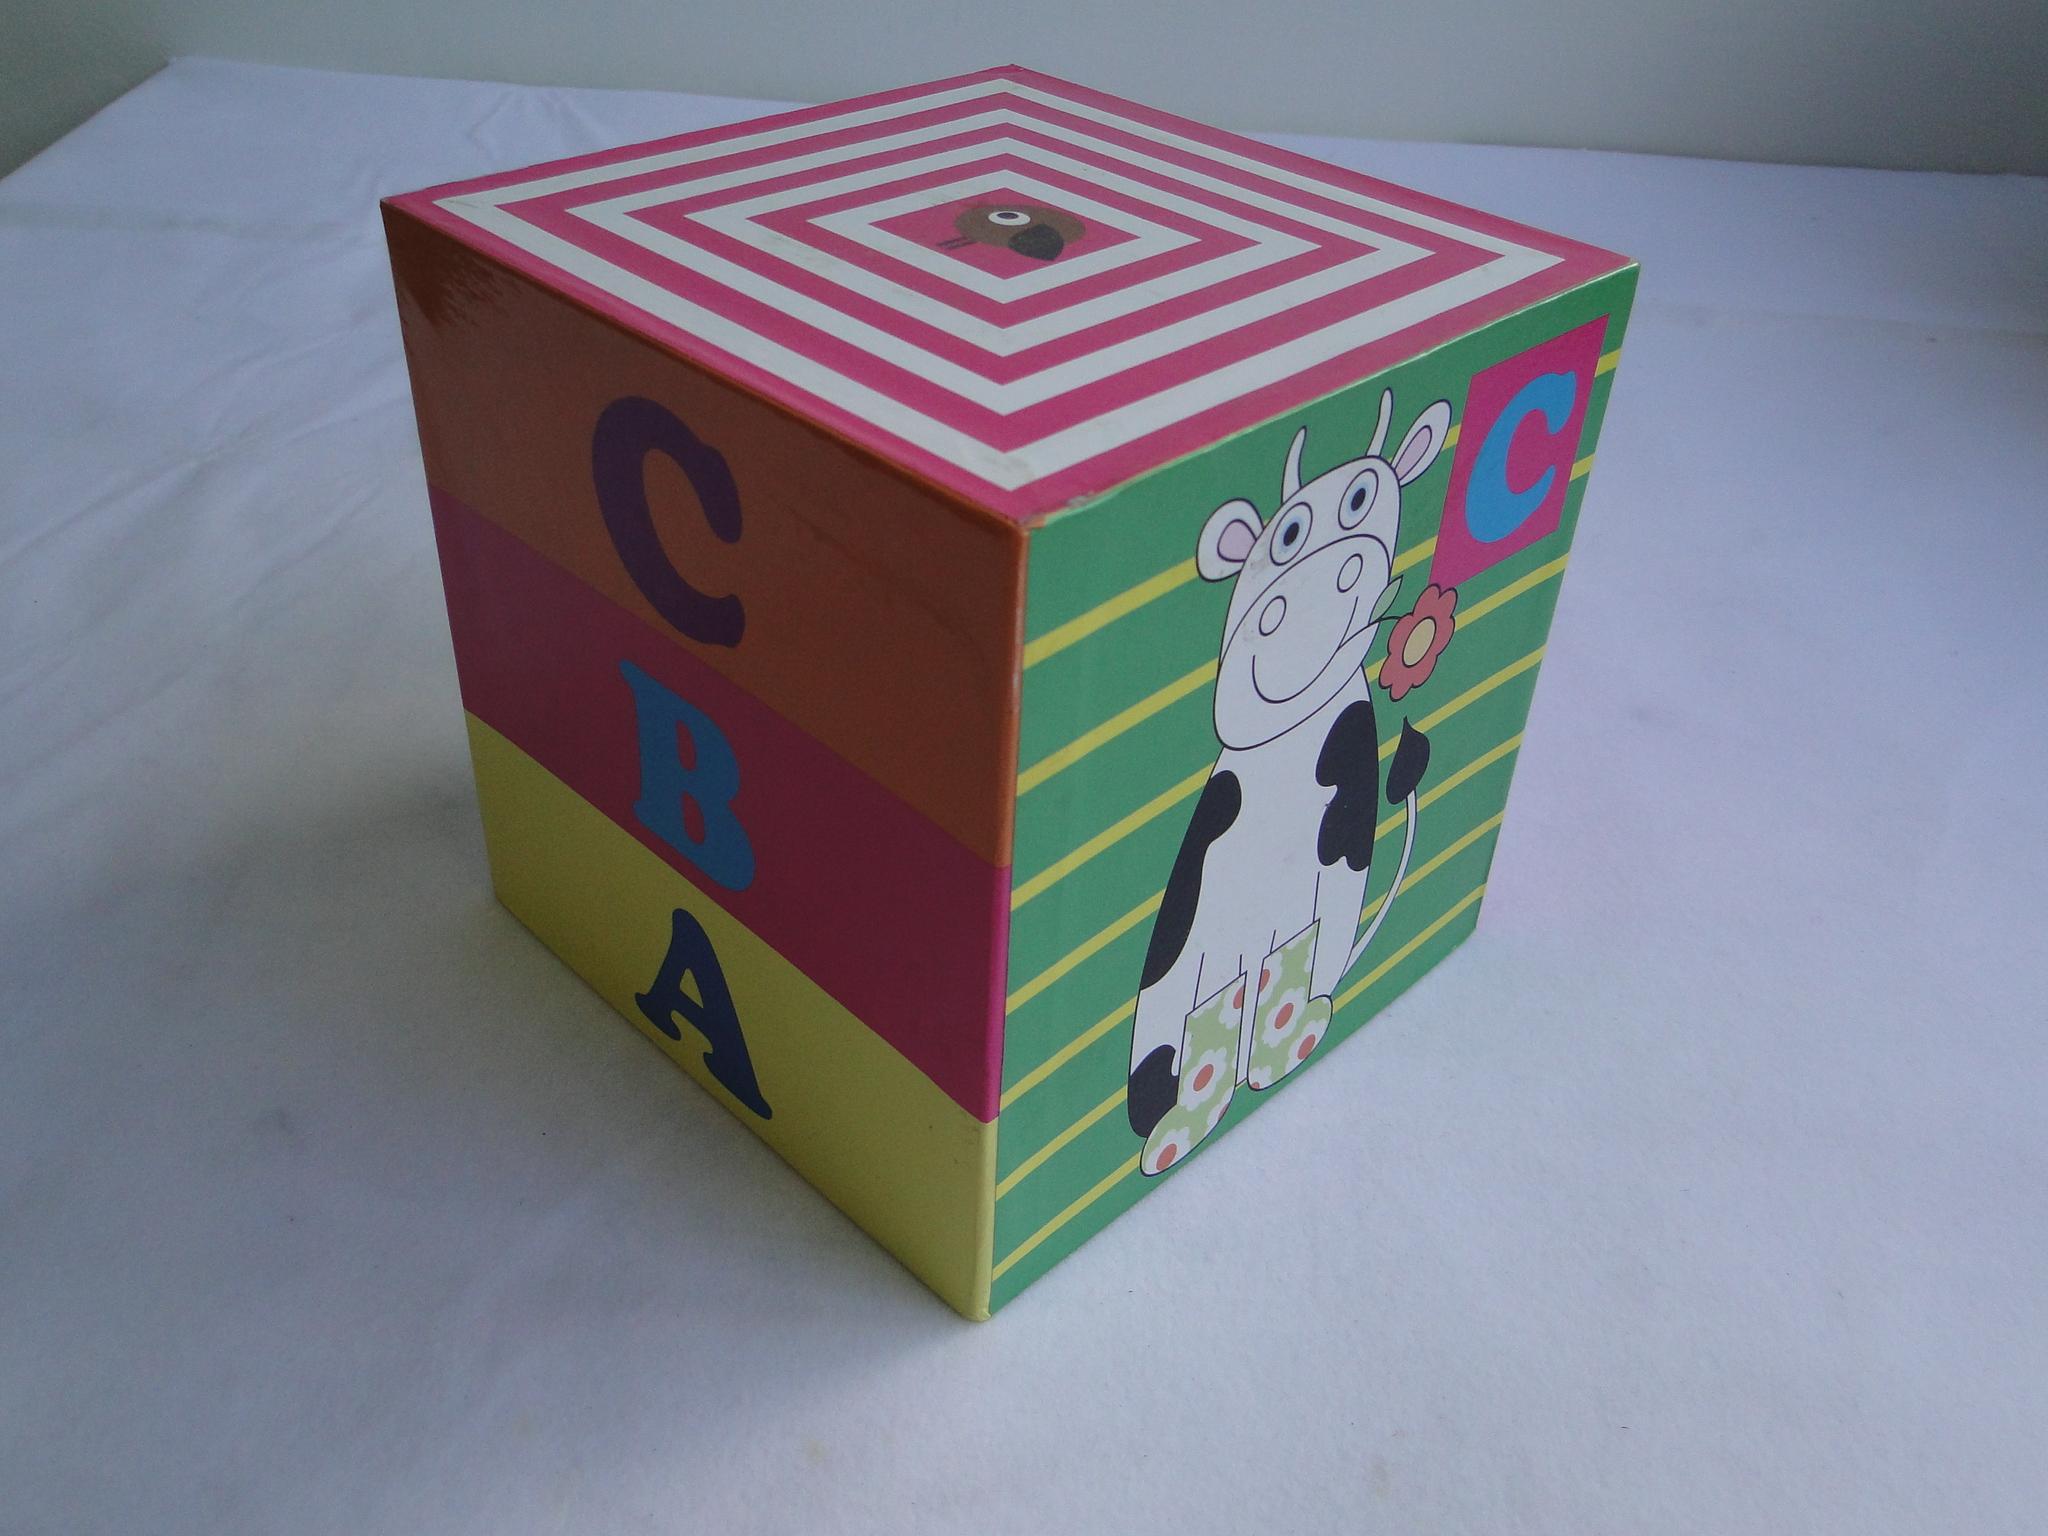 lid box